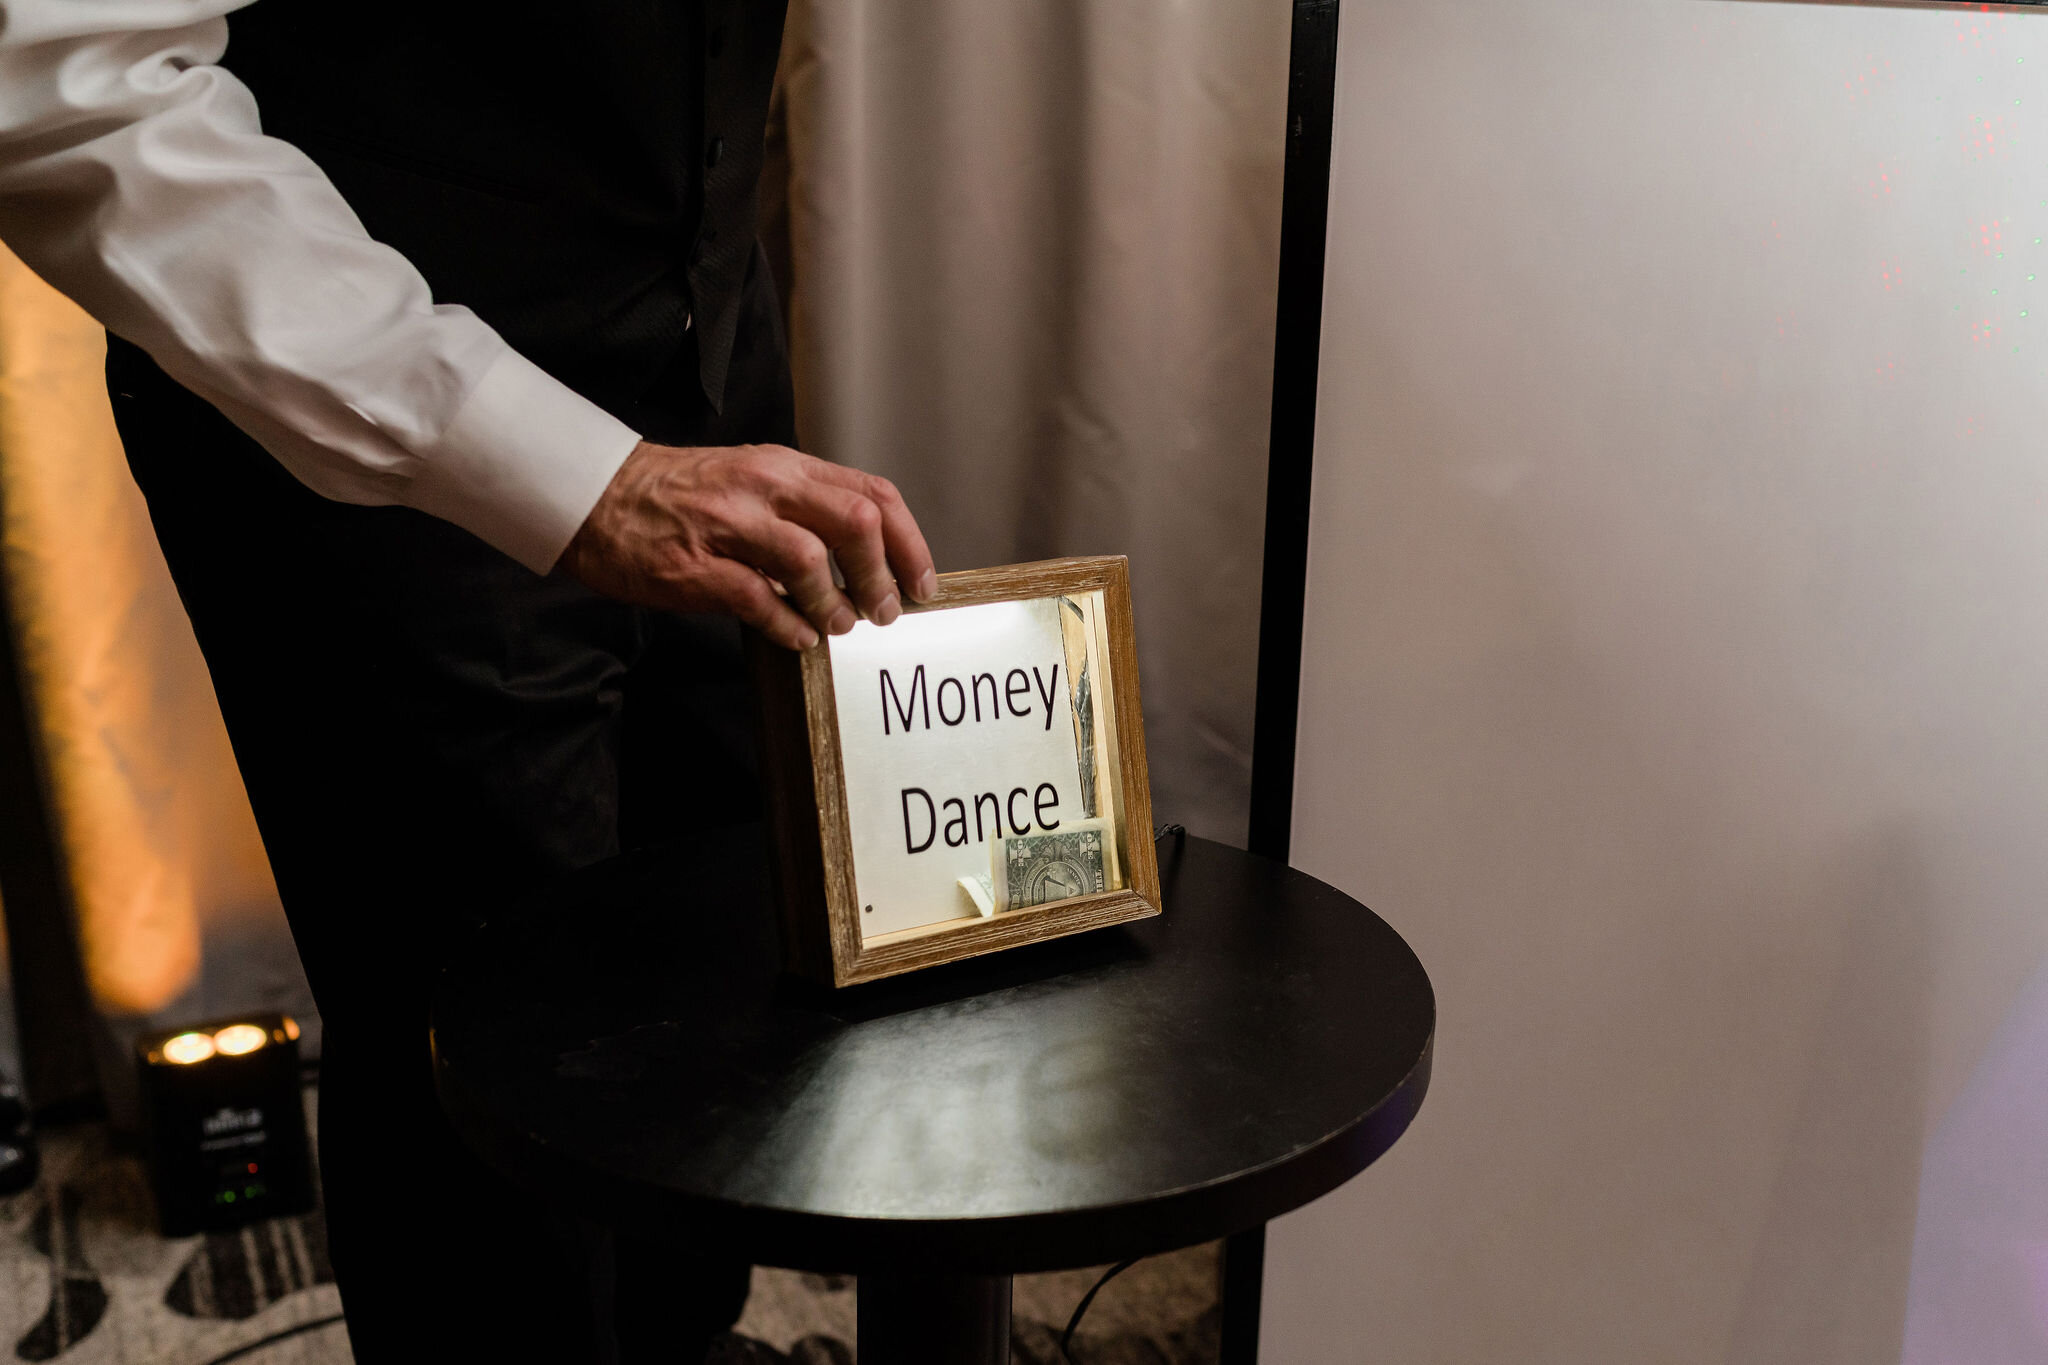 Money dance money holder